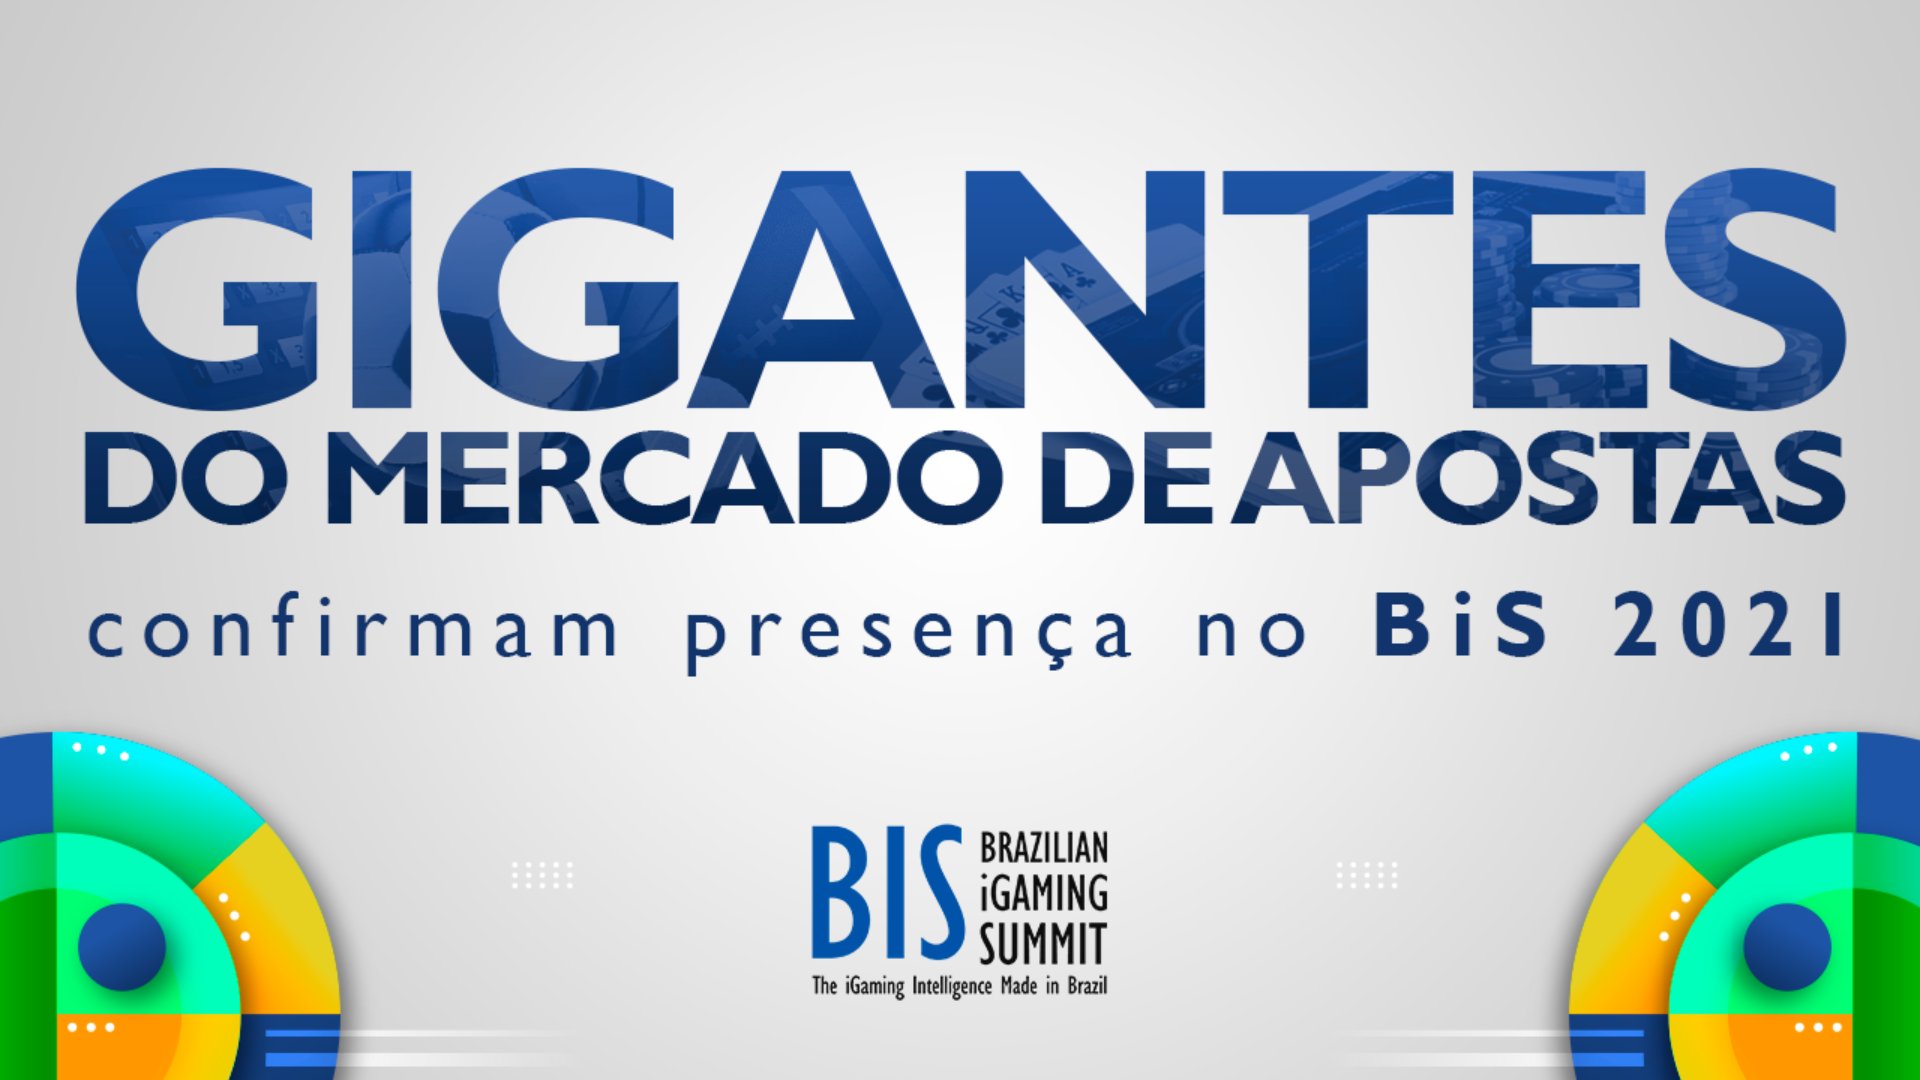 O Brazilian iGaming Summit ocorrerá nos dias 1 e 2 de dezembro